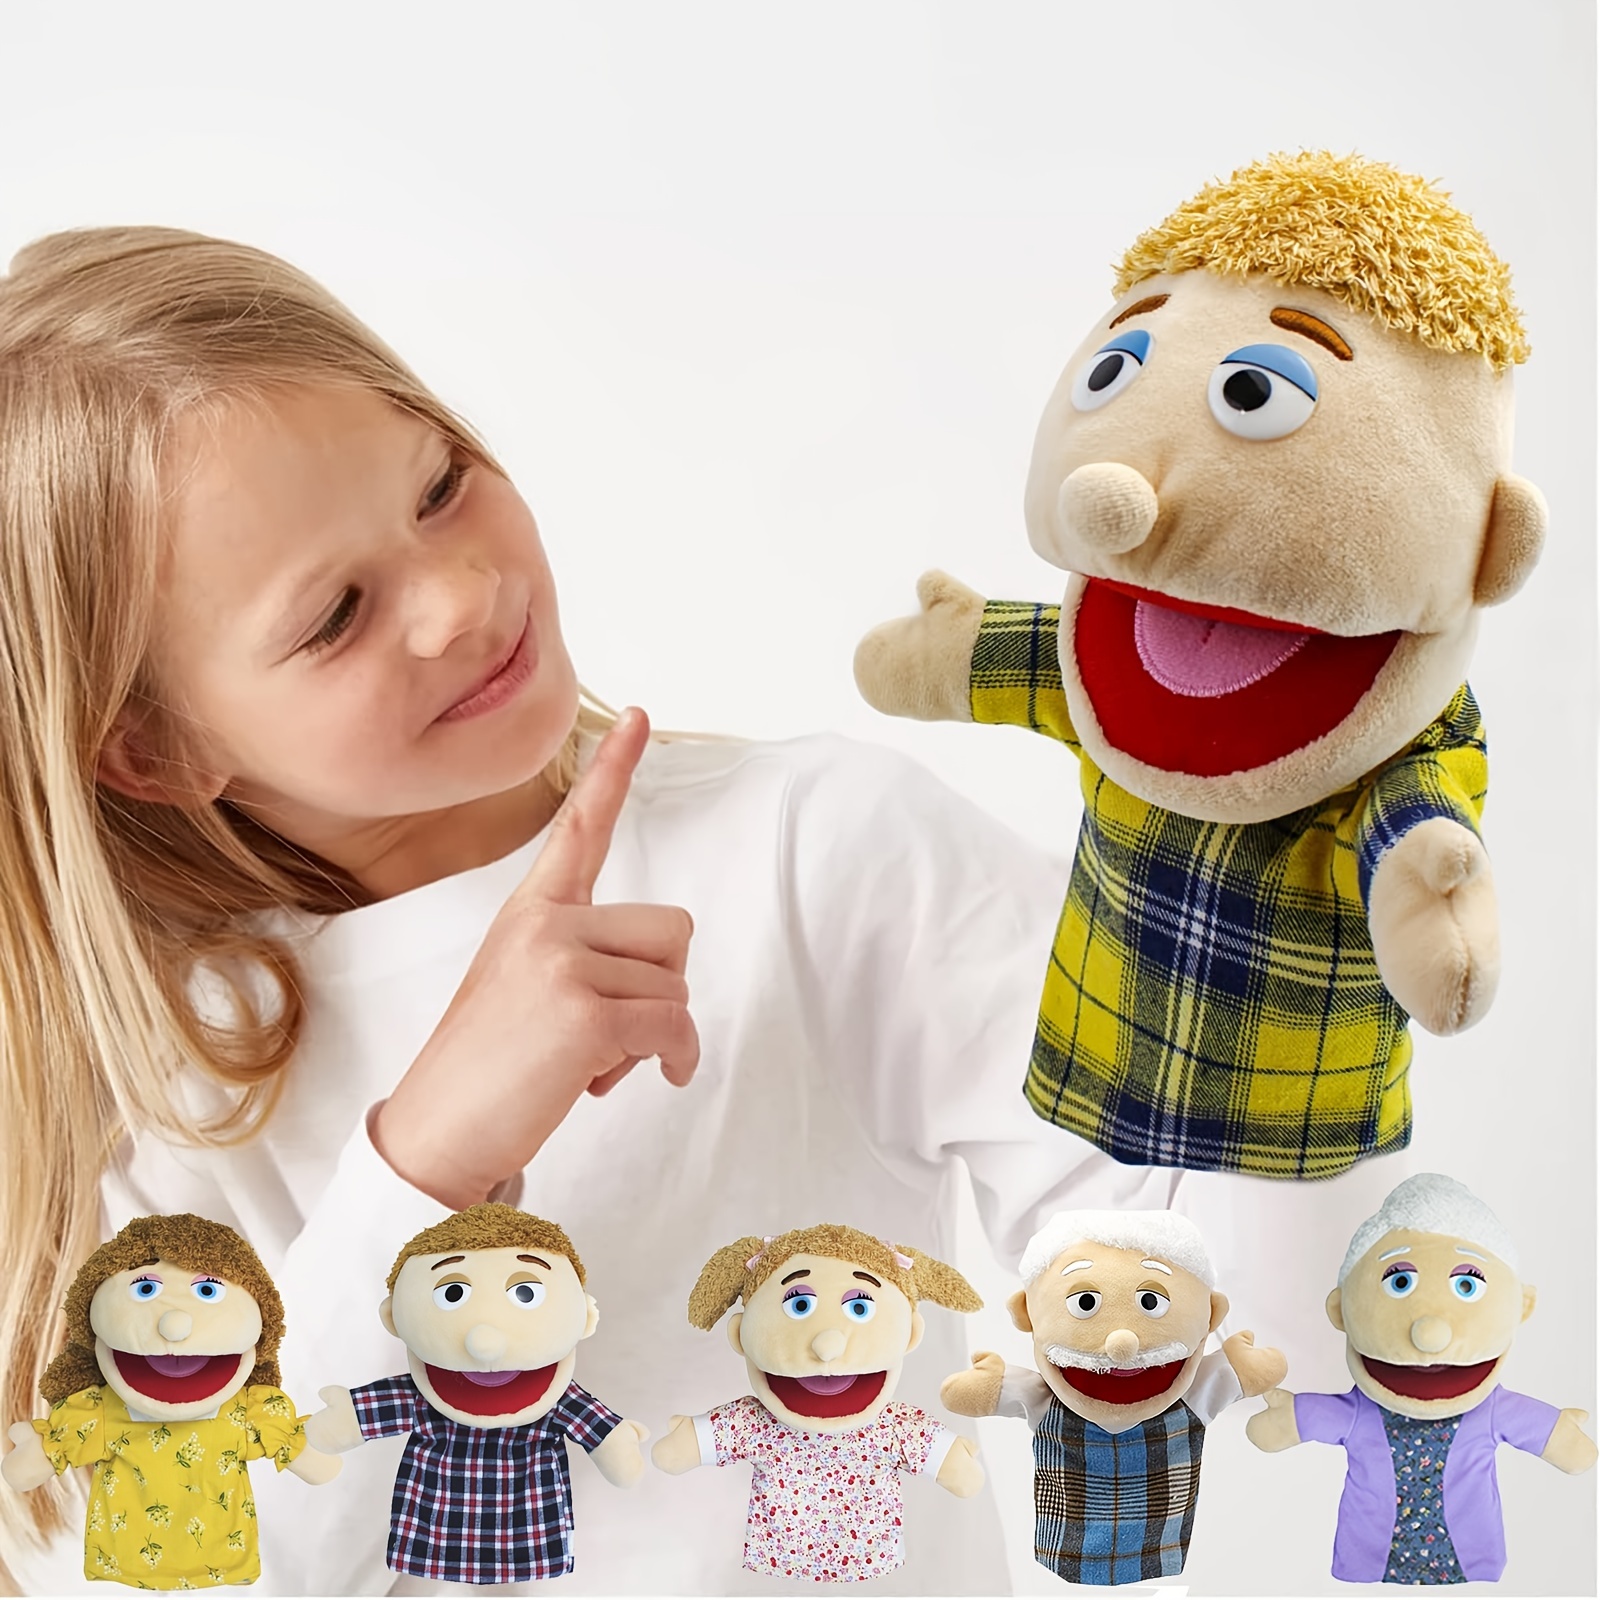 Jeffy Puppet Jeffy Hand Puppet Plush Toy 23 Stuffed Doll Kids Gift NEW USA